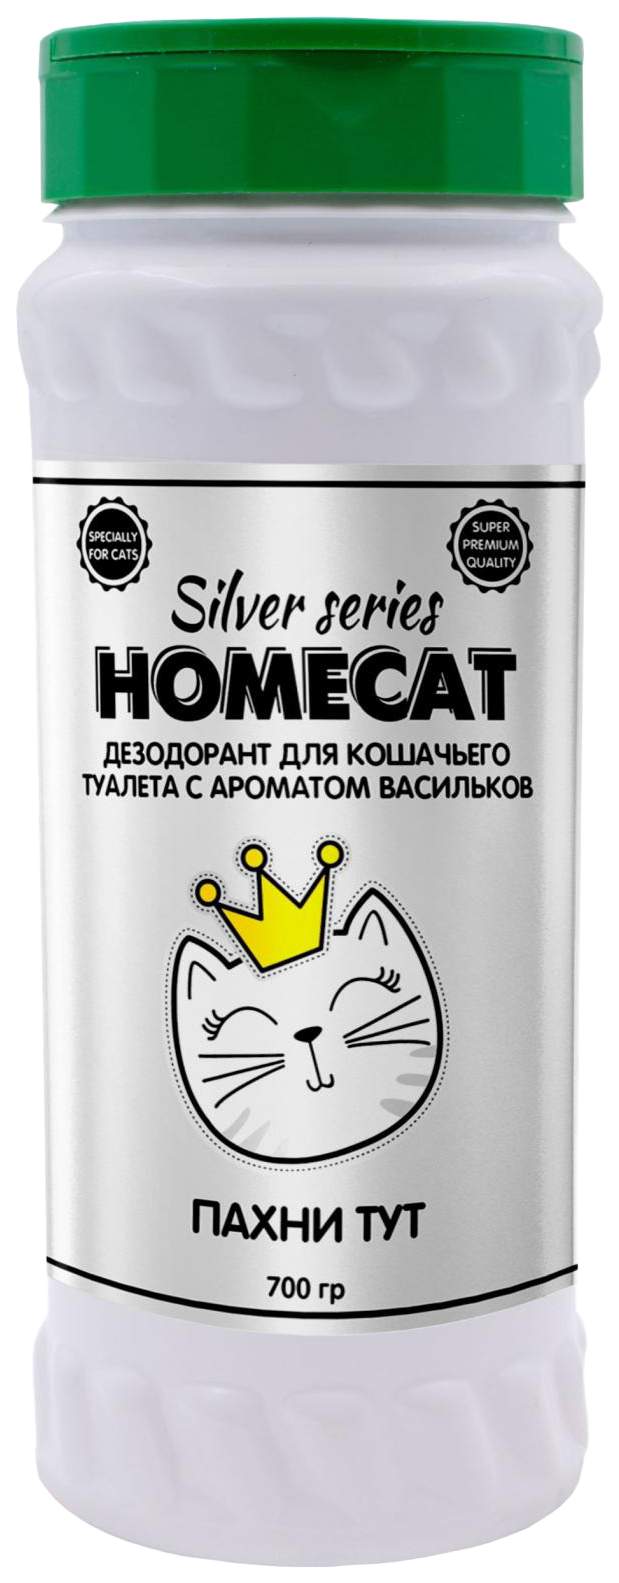 Дезодорант для кошачьего туалета HOMECAT SILVER Пахни ТУТ с ароматом васильков, 700г